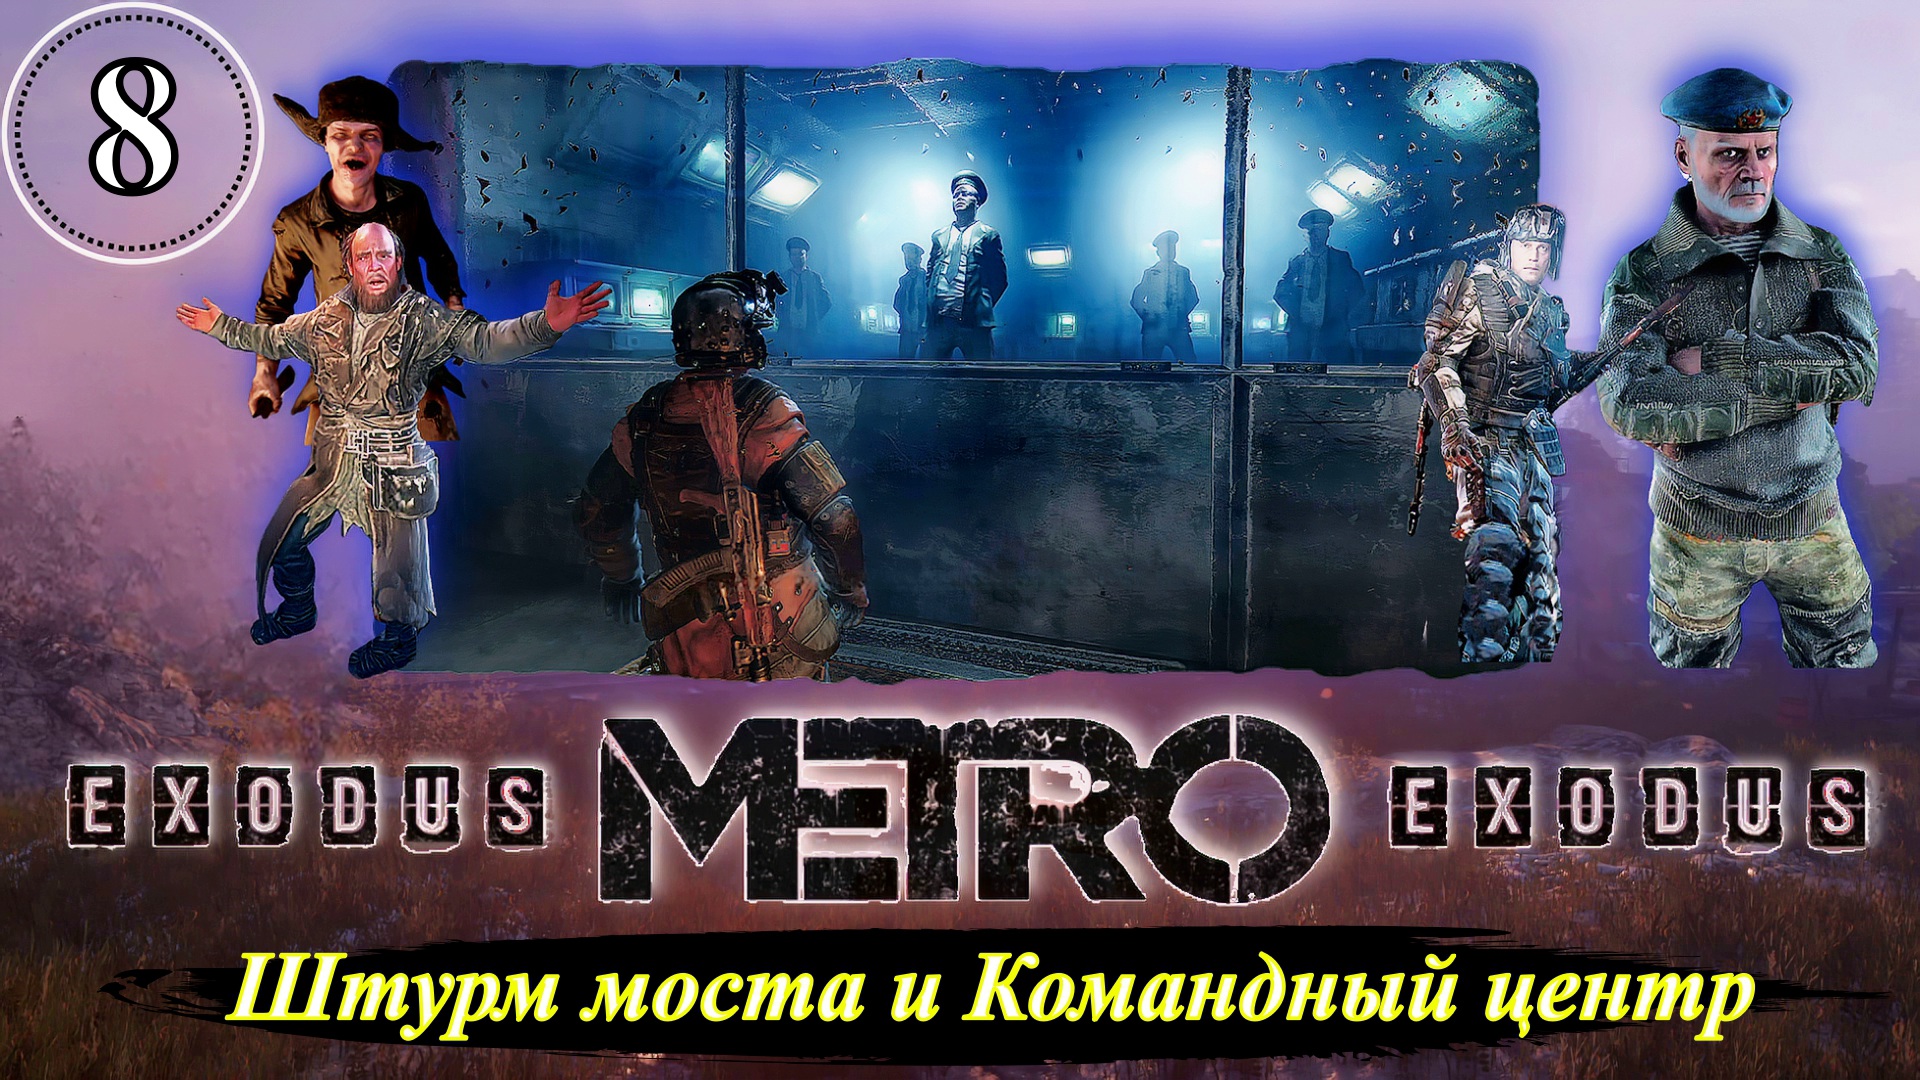 Metro Exodus Штурм моста и Командный центр - Прохождение. Часть 8.mp4